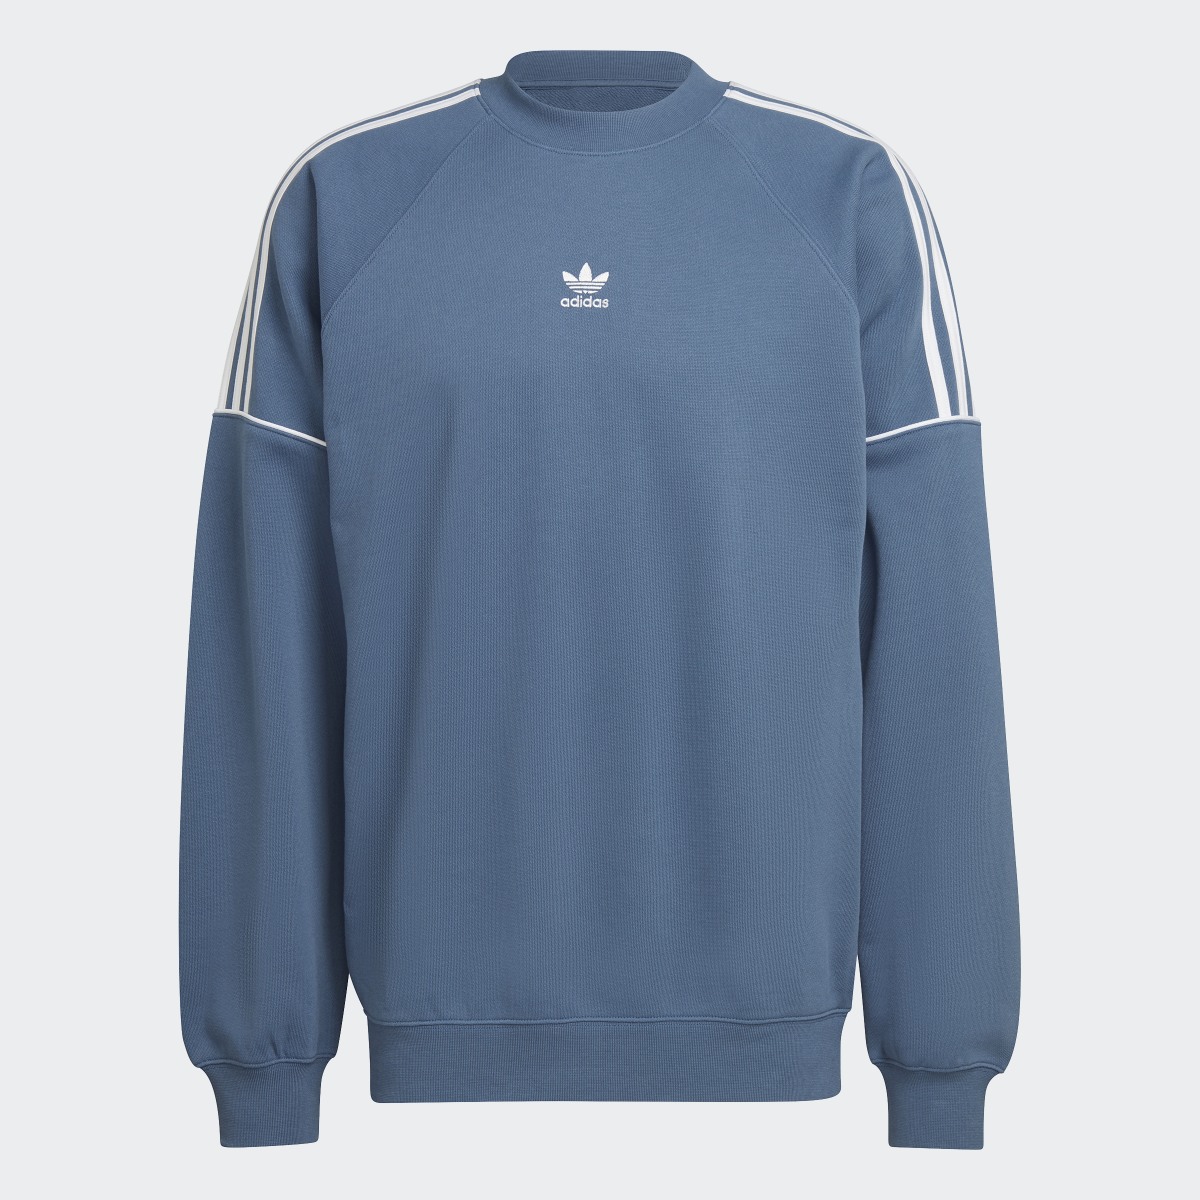 Adidas Rekive Crew Sweatshirt. 5